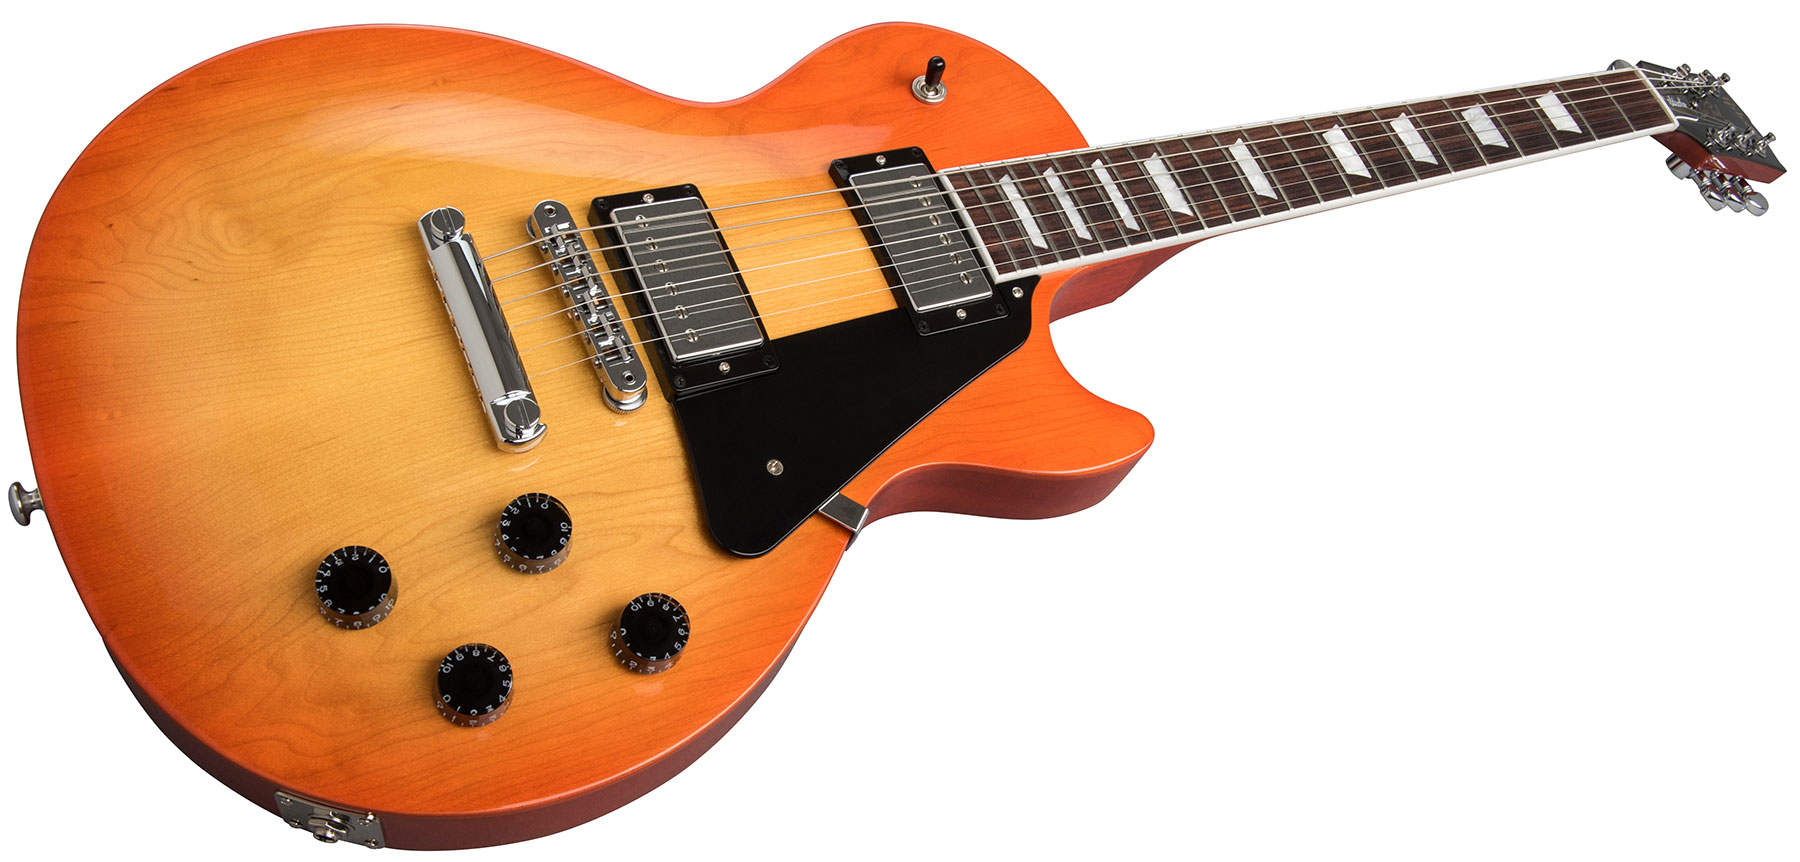 Gibson Les Paul Studio 2019 Hh Ht Rw - Tangerine Burst - Enkel gesneden elektrische gitaar - Variation 1